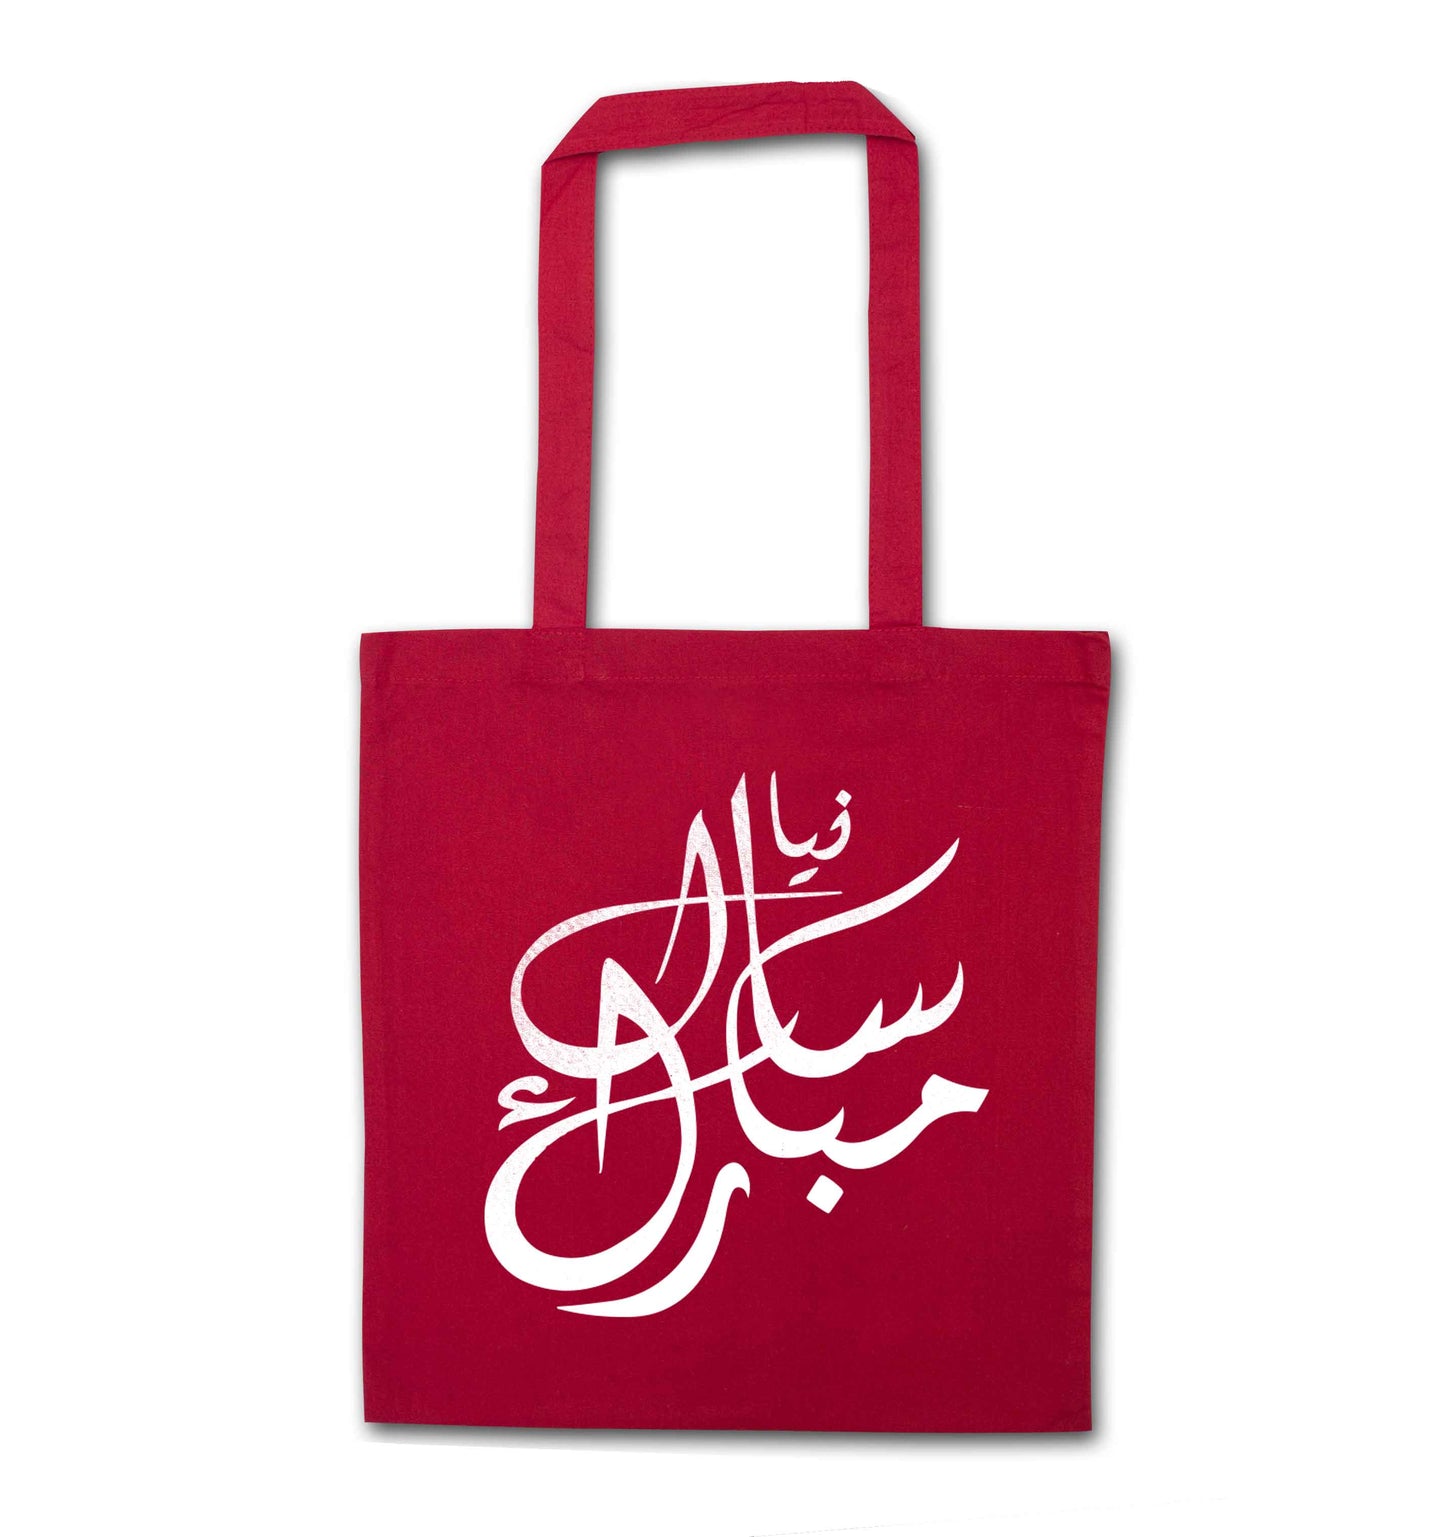 Urdu Naya saal mubarak red tote bag